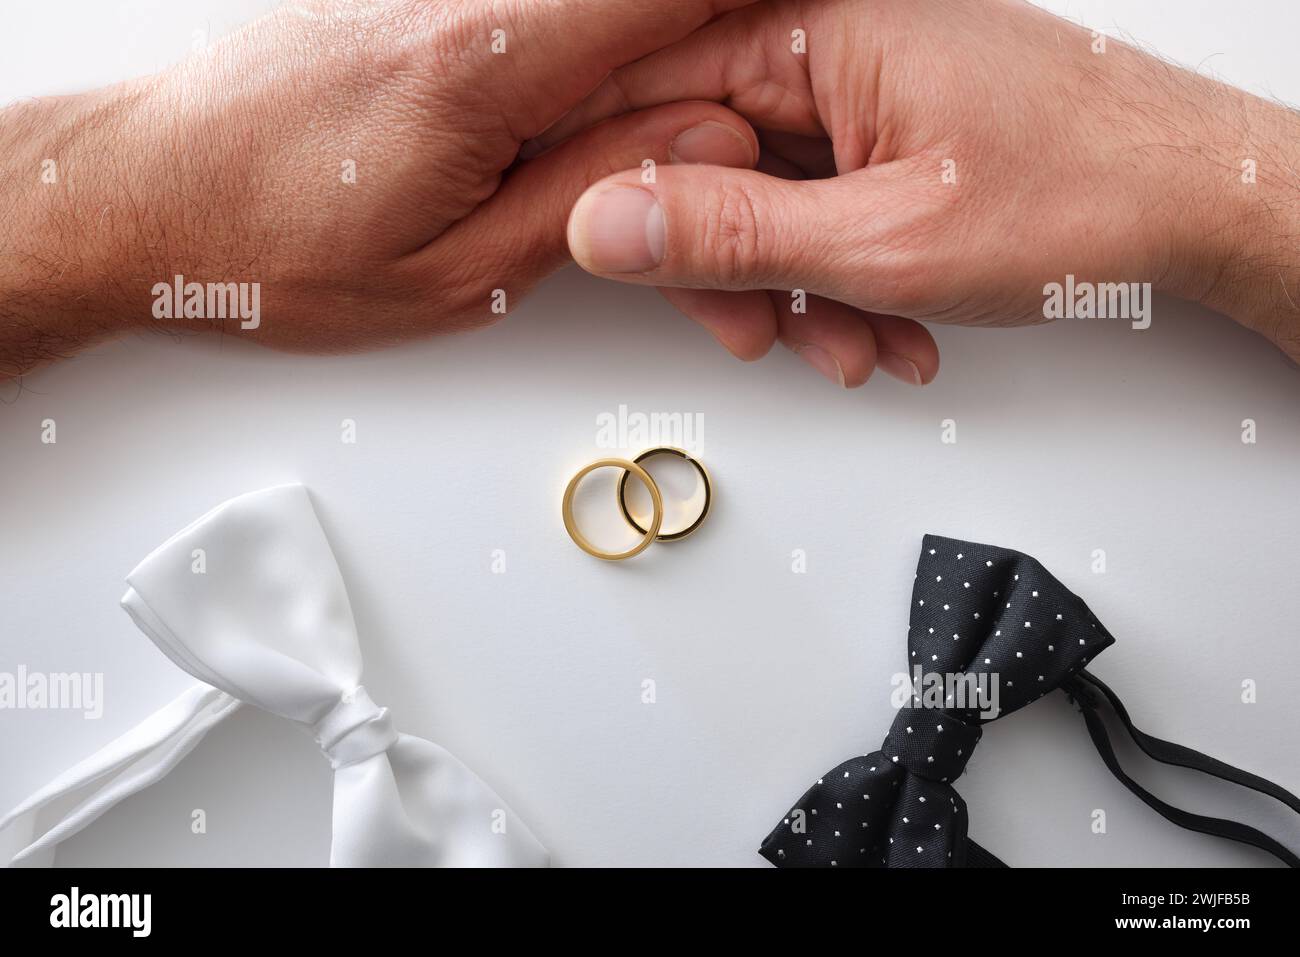 Fond conceptuel de mariage gay avec noeud papillon noir et blanc, anneaux de mariage au milieu et couple tenant la main. Vue de dessus. Banque D'Images